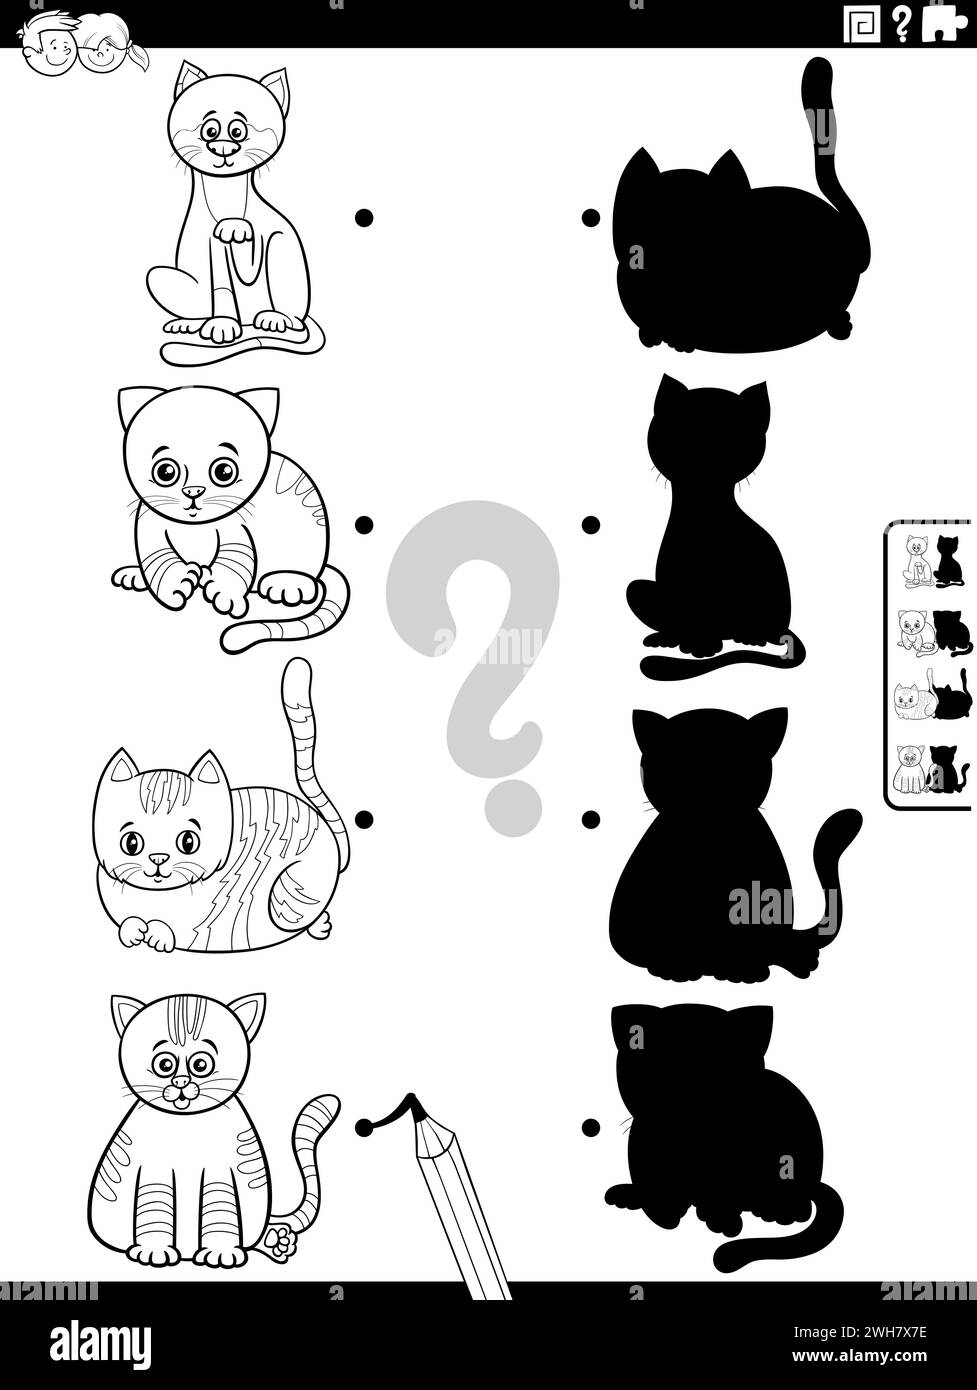 Illustration de dessin animé noir et blanc de correspondre aux ombres à droite avec des images activité éducative avec la page de coloriage de chatons drôles Illustration de Vecteur